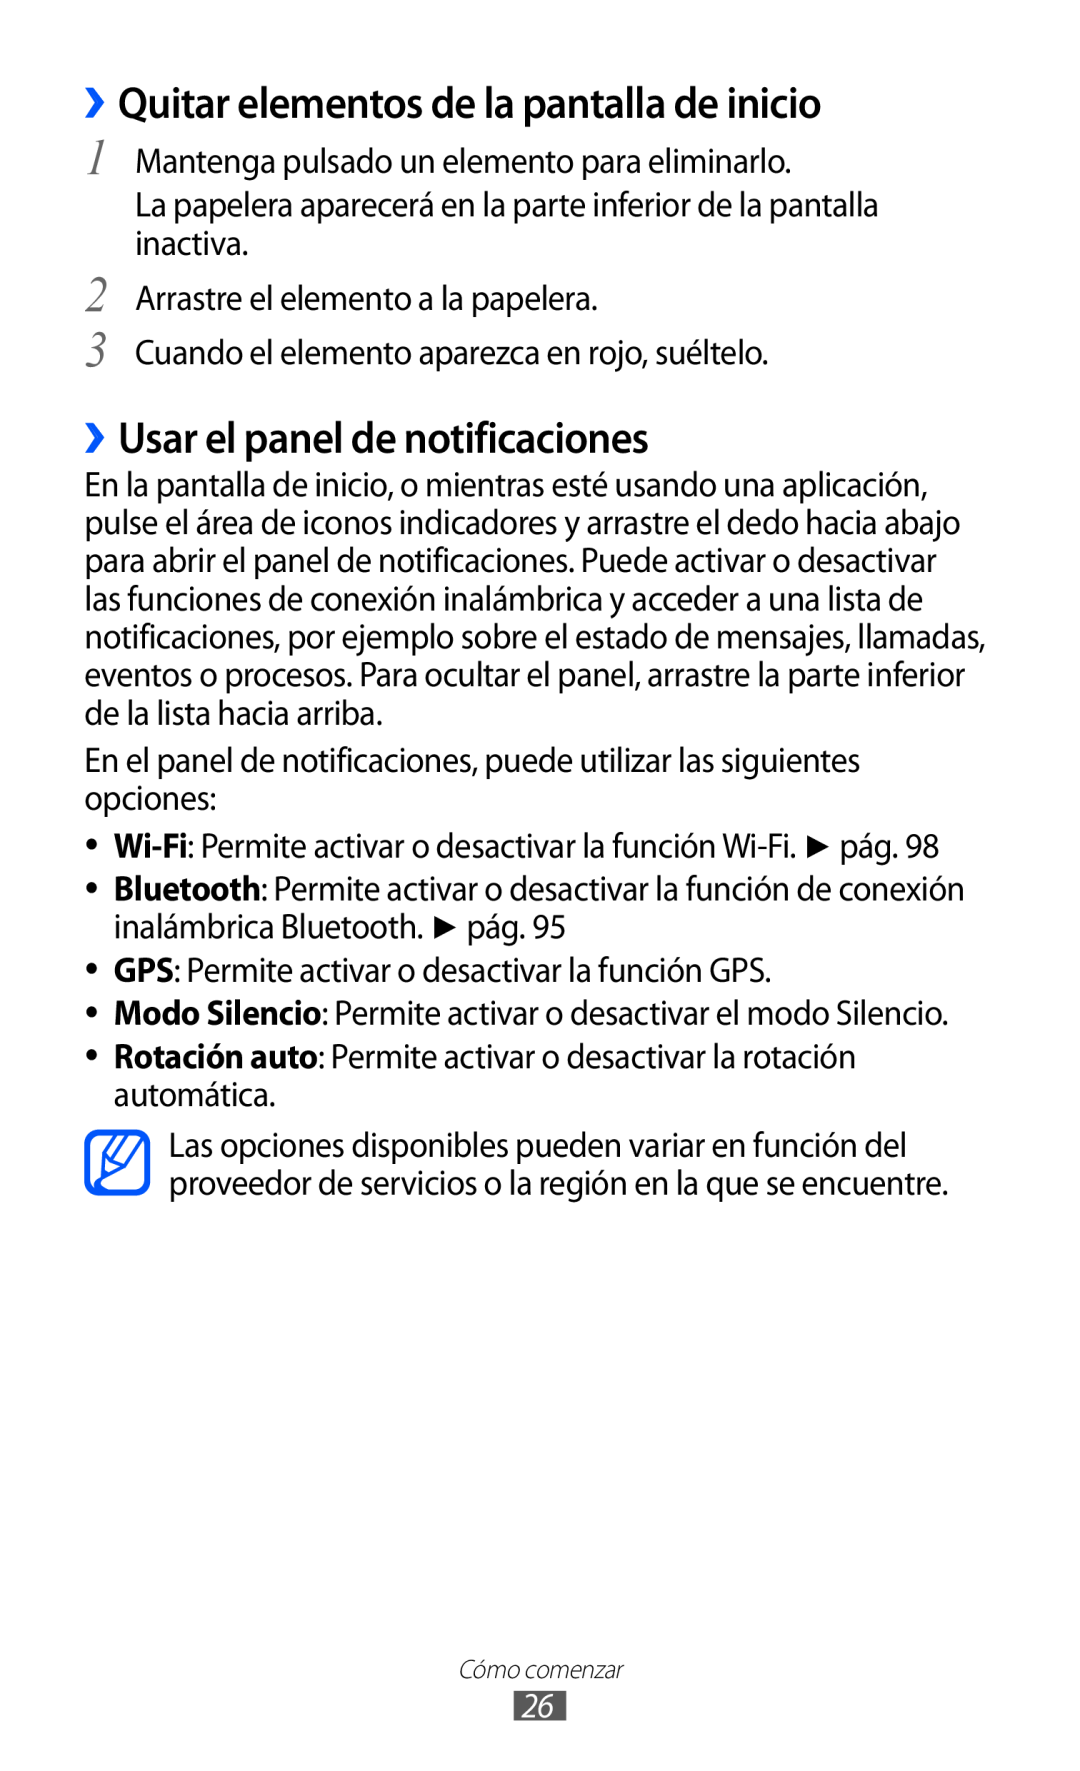 Samsung GT-S6500XKAITV, GT-S6500RWDTMN manual ››Quitar elementos de la pantalla de inicio, ››Usar el panel de notificaciones 